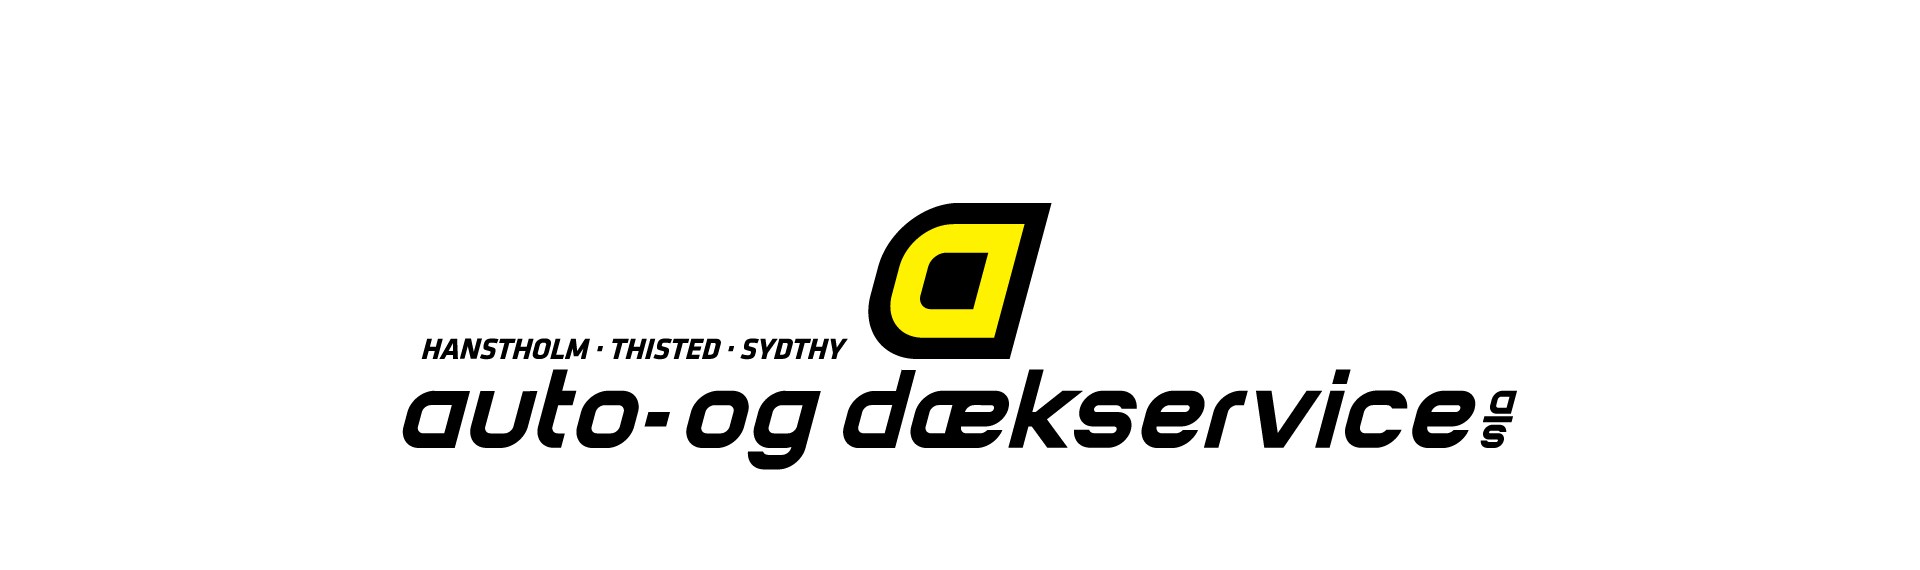 Teleboxen_Reference_Auto_og_Dækservice_4.jpg